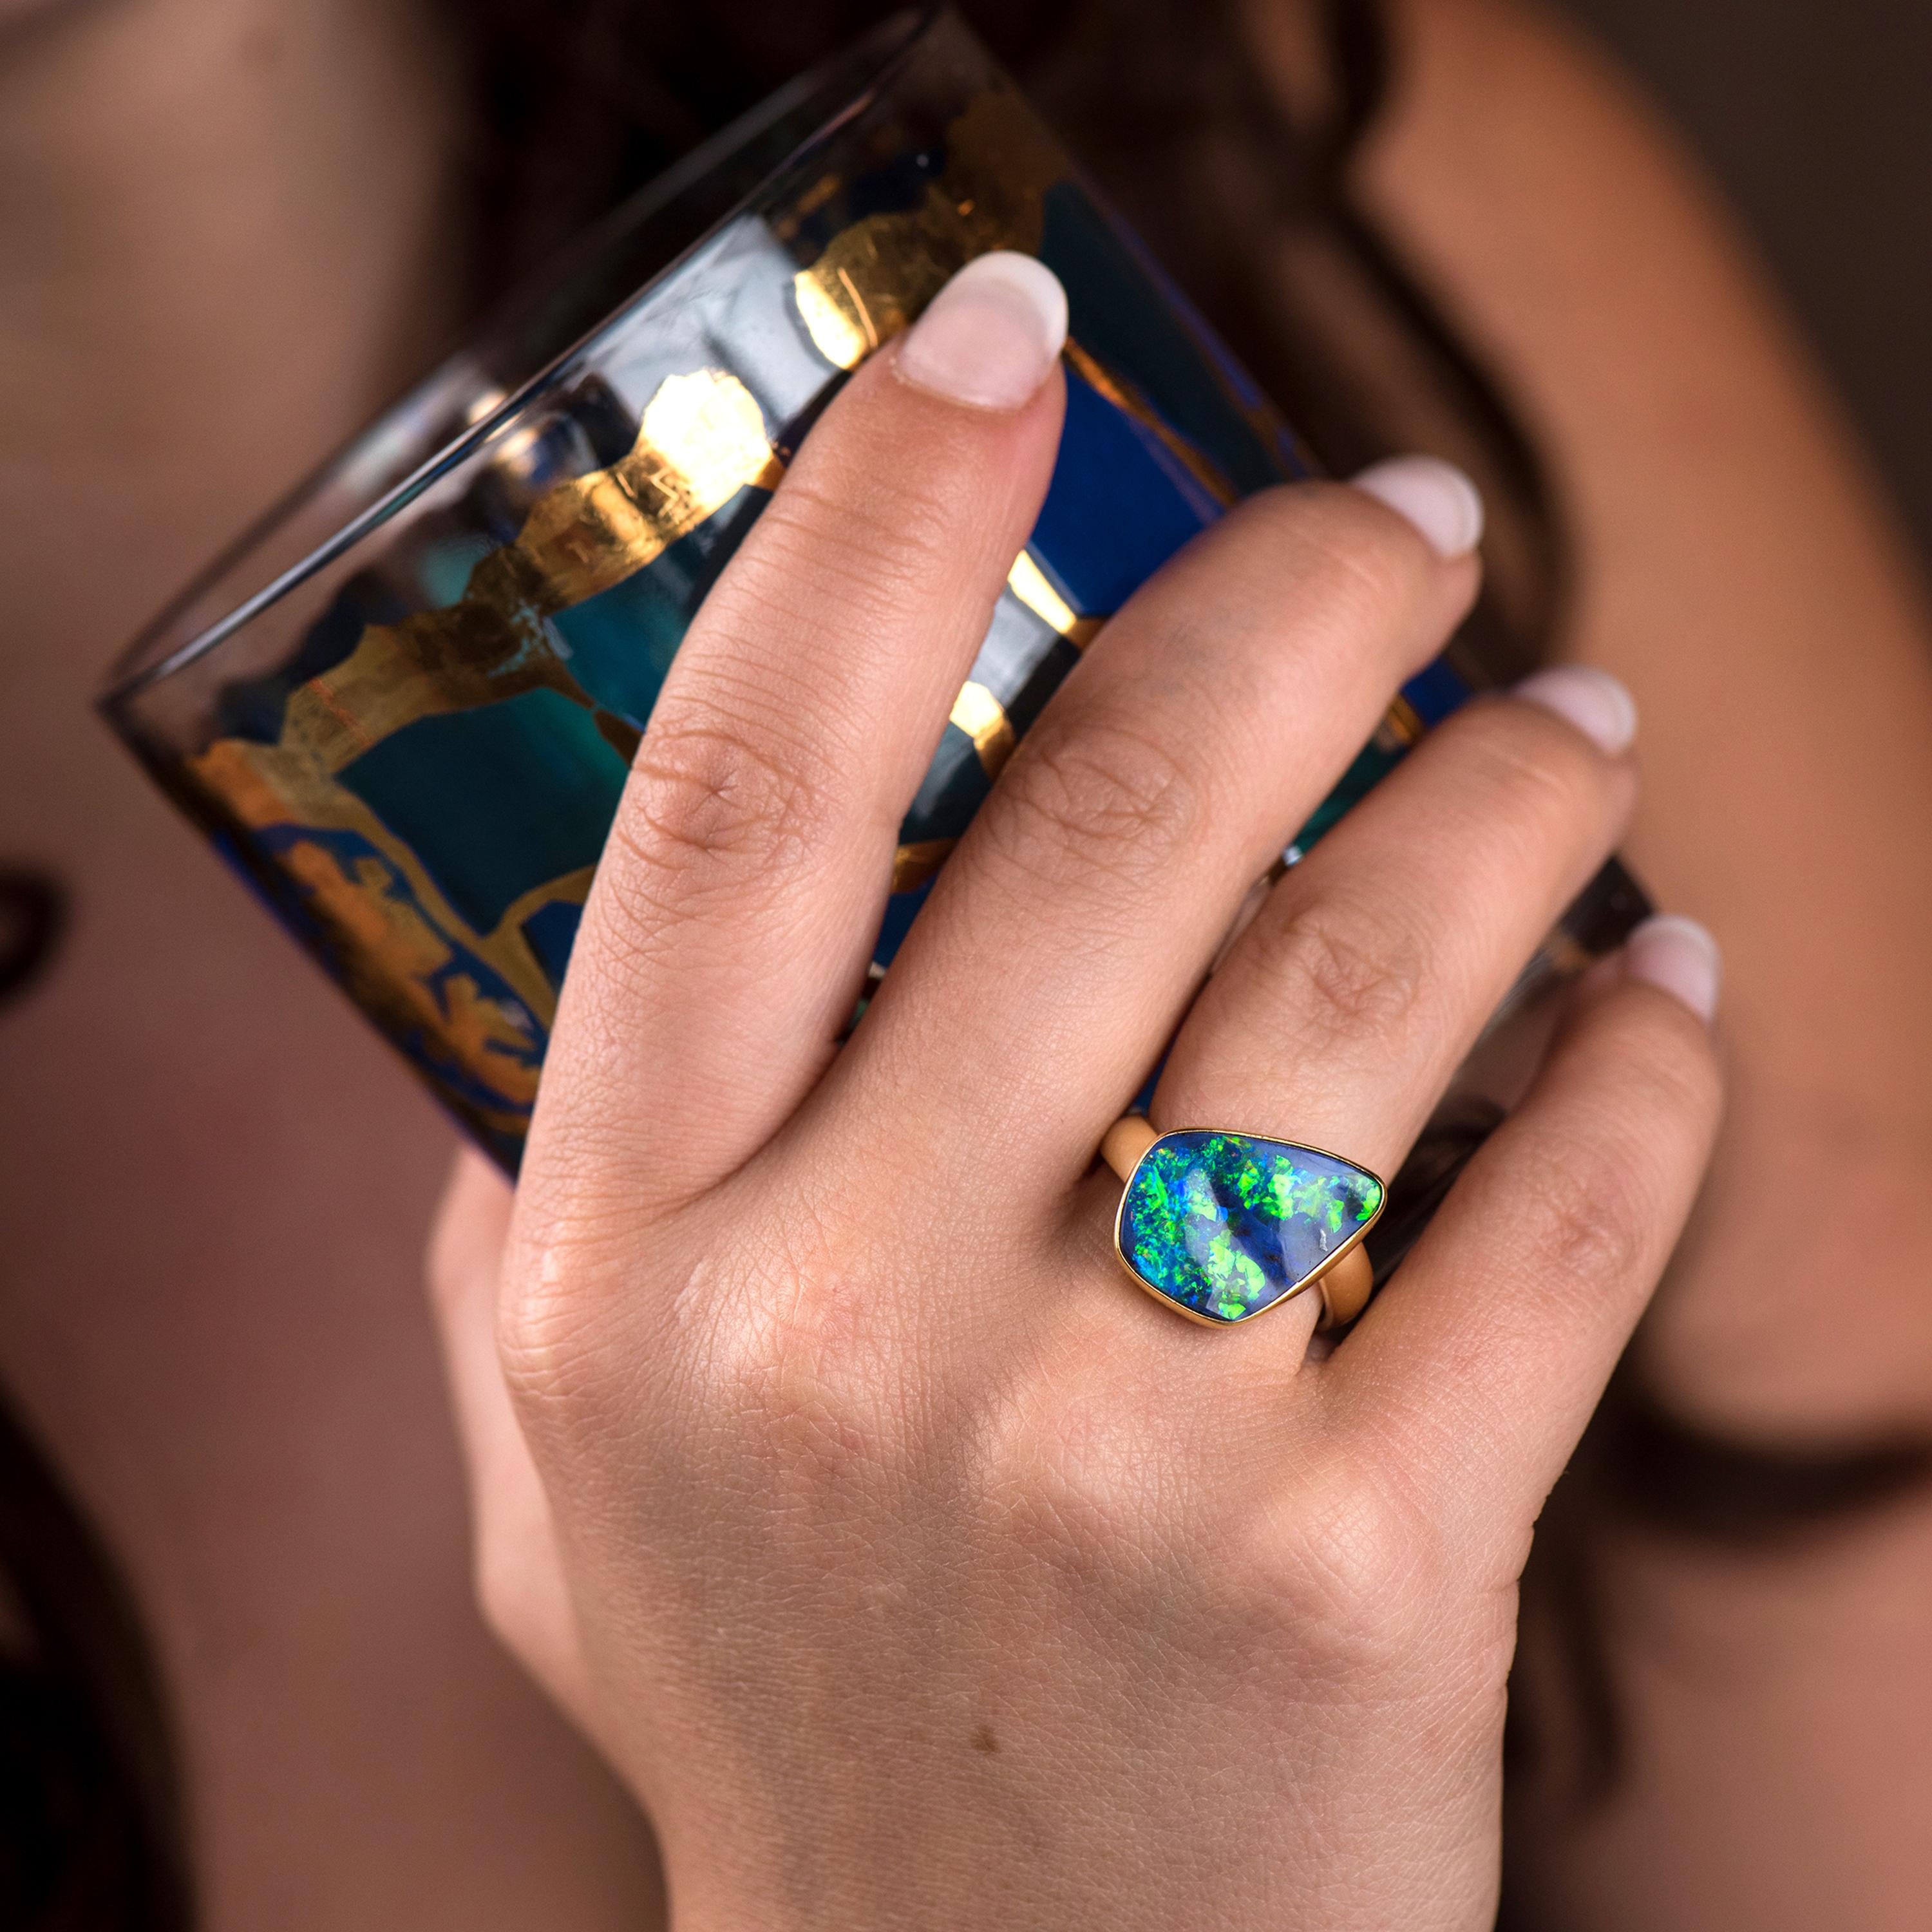 Boulder-Opal-Ring aus 22-karätigem Gold mit 18-karätiger Goldschiene.  Die großen Blitze von Blau, Grün mit einem Hauch von Lila sind spektakulär!  Das 4 mm breite Goldband ist abgesetzt und verleiht ihm einen einzigartigen Look.  Ein